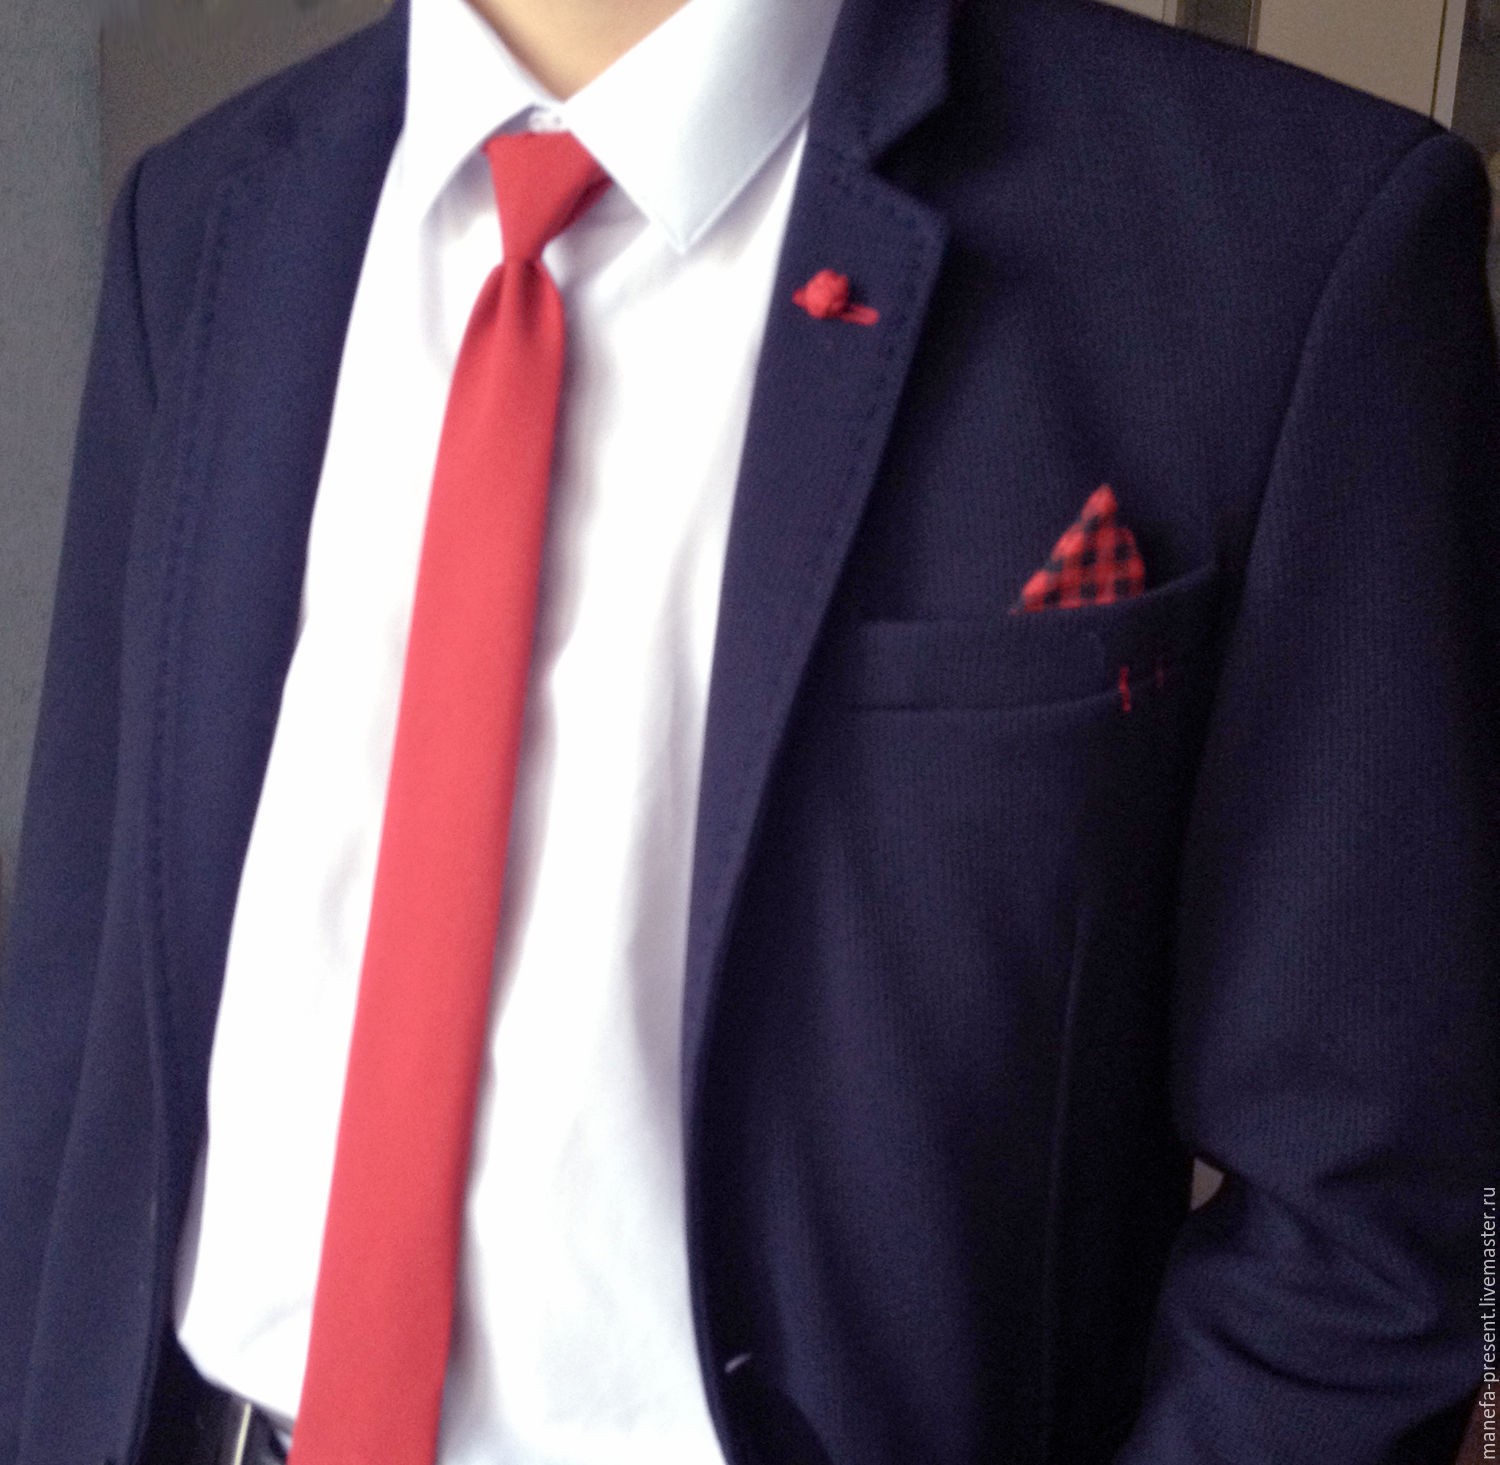 Белая рубашка бордовый галстук